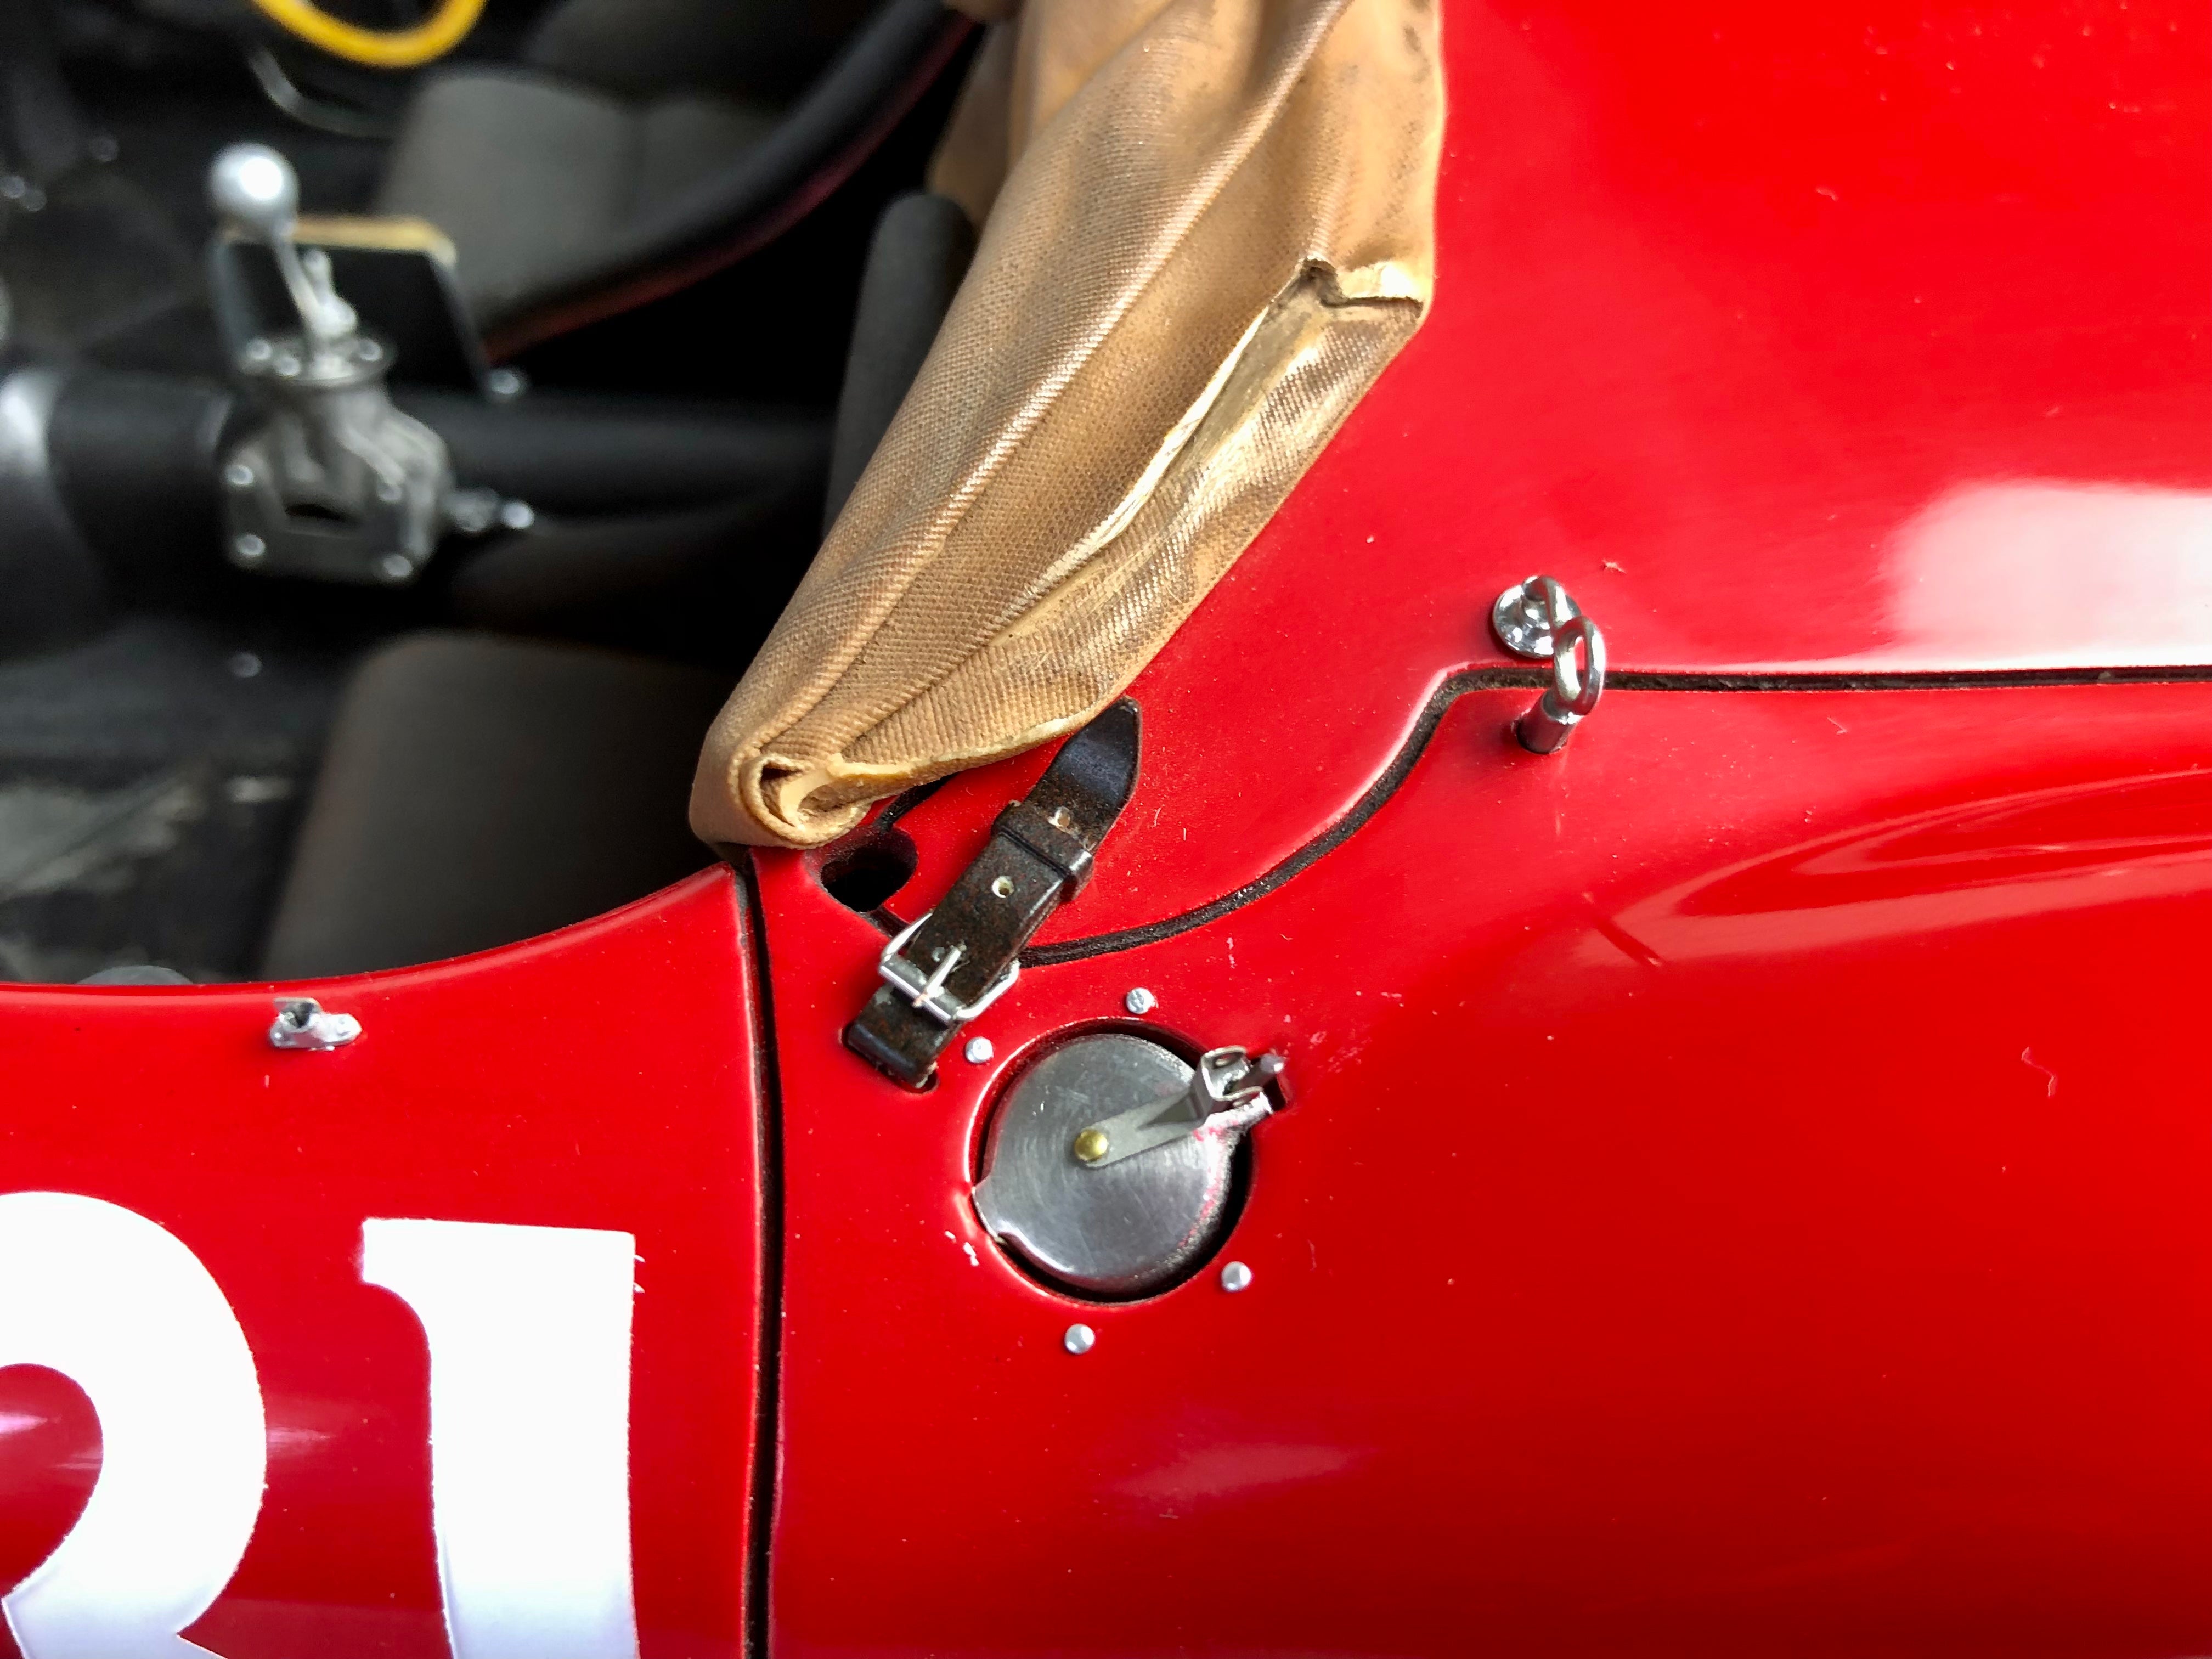 Patrice de Conto 1:8 scale Ferrari 335S 1957 Mille Miglia